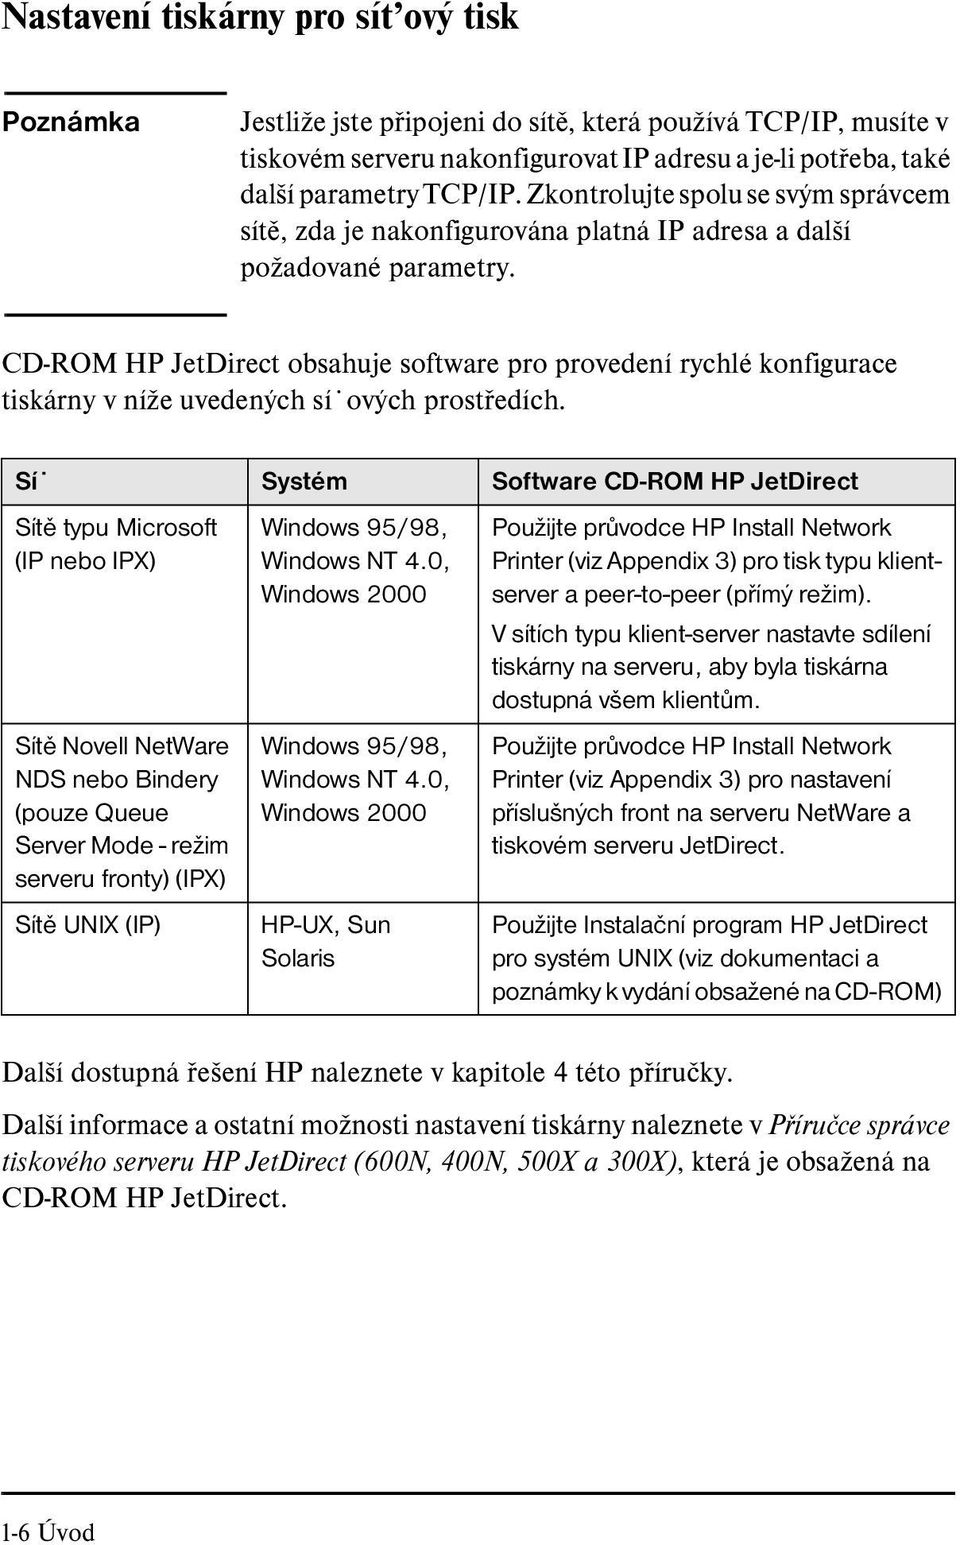 CD-ROM HP JetDirect obsahuje software pro provedení rychlé konfigurace tiskárny v níže uvedených sí ových prostředích.